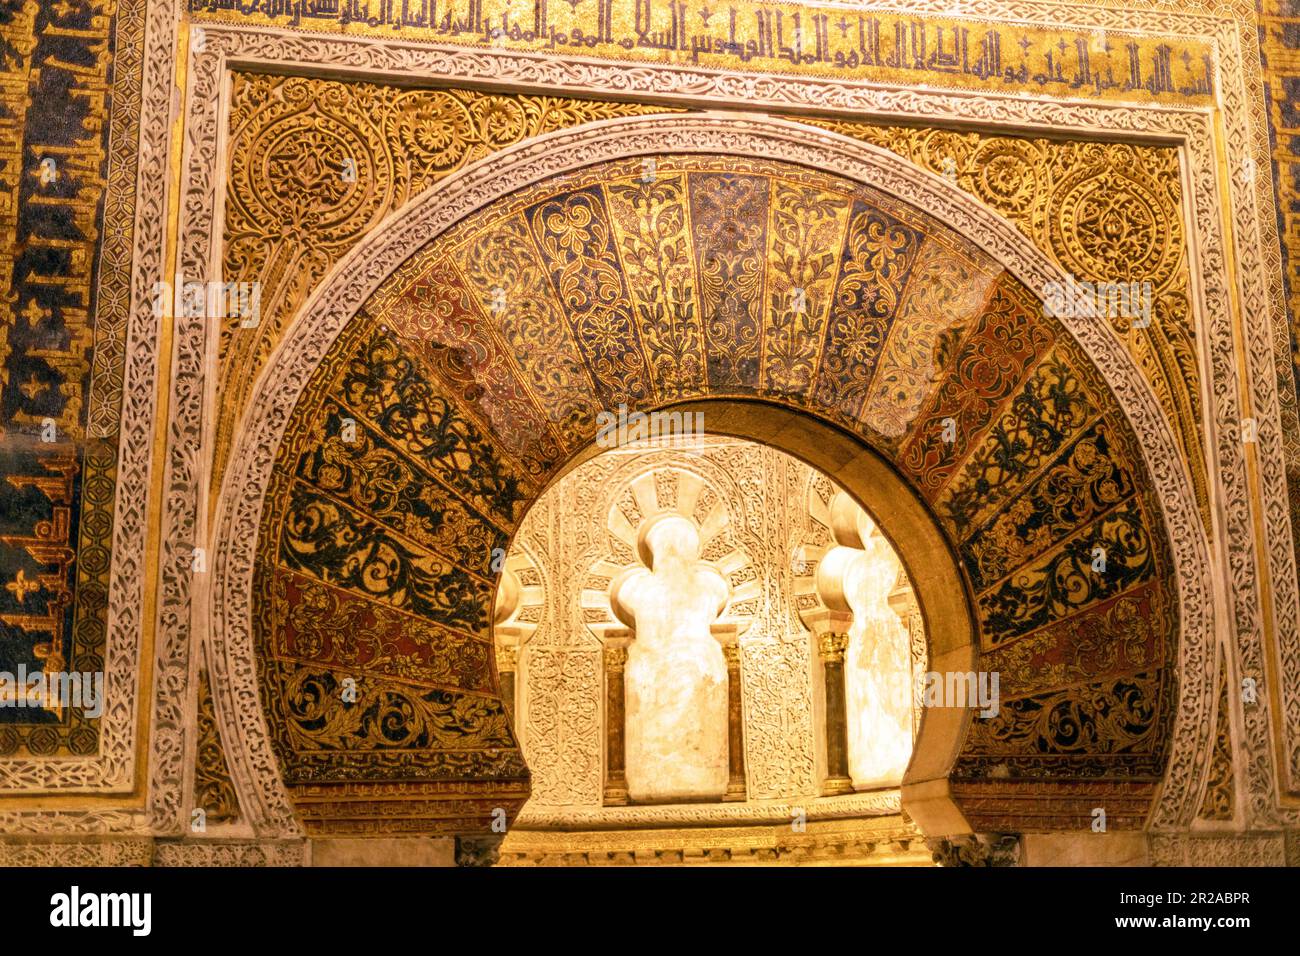 Spanien, Cordoba, Mezquita, auch bekannt als die große Moschee von Cordoba. Innenausstattung mit maurischer Architektur Stockfoto